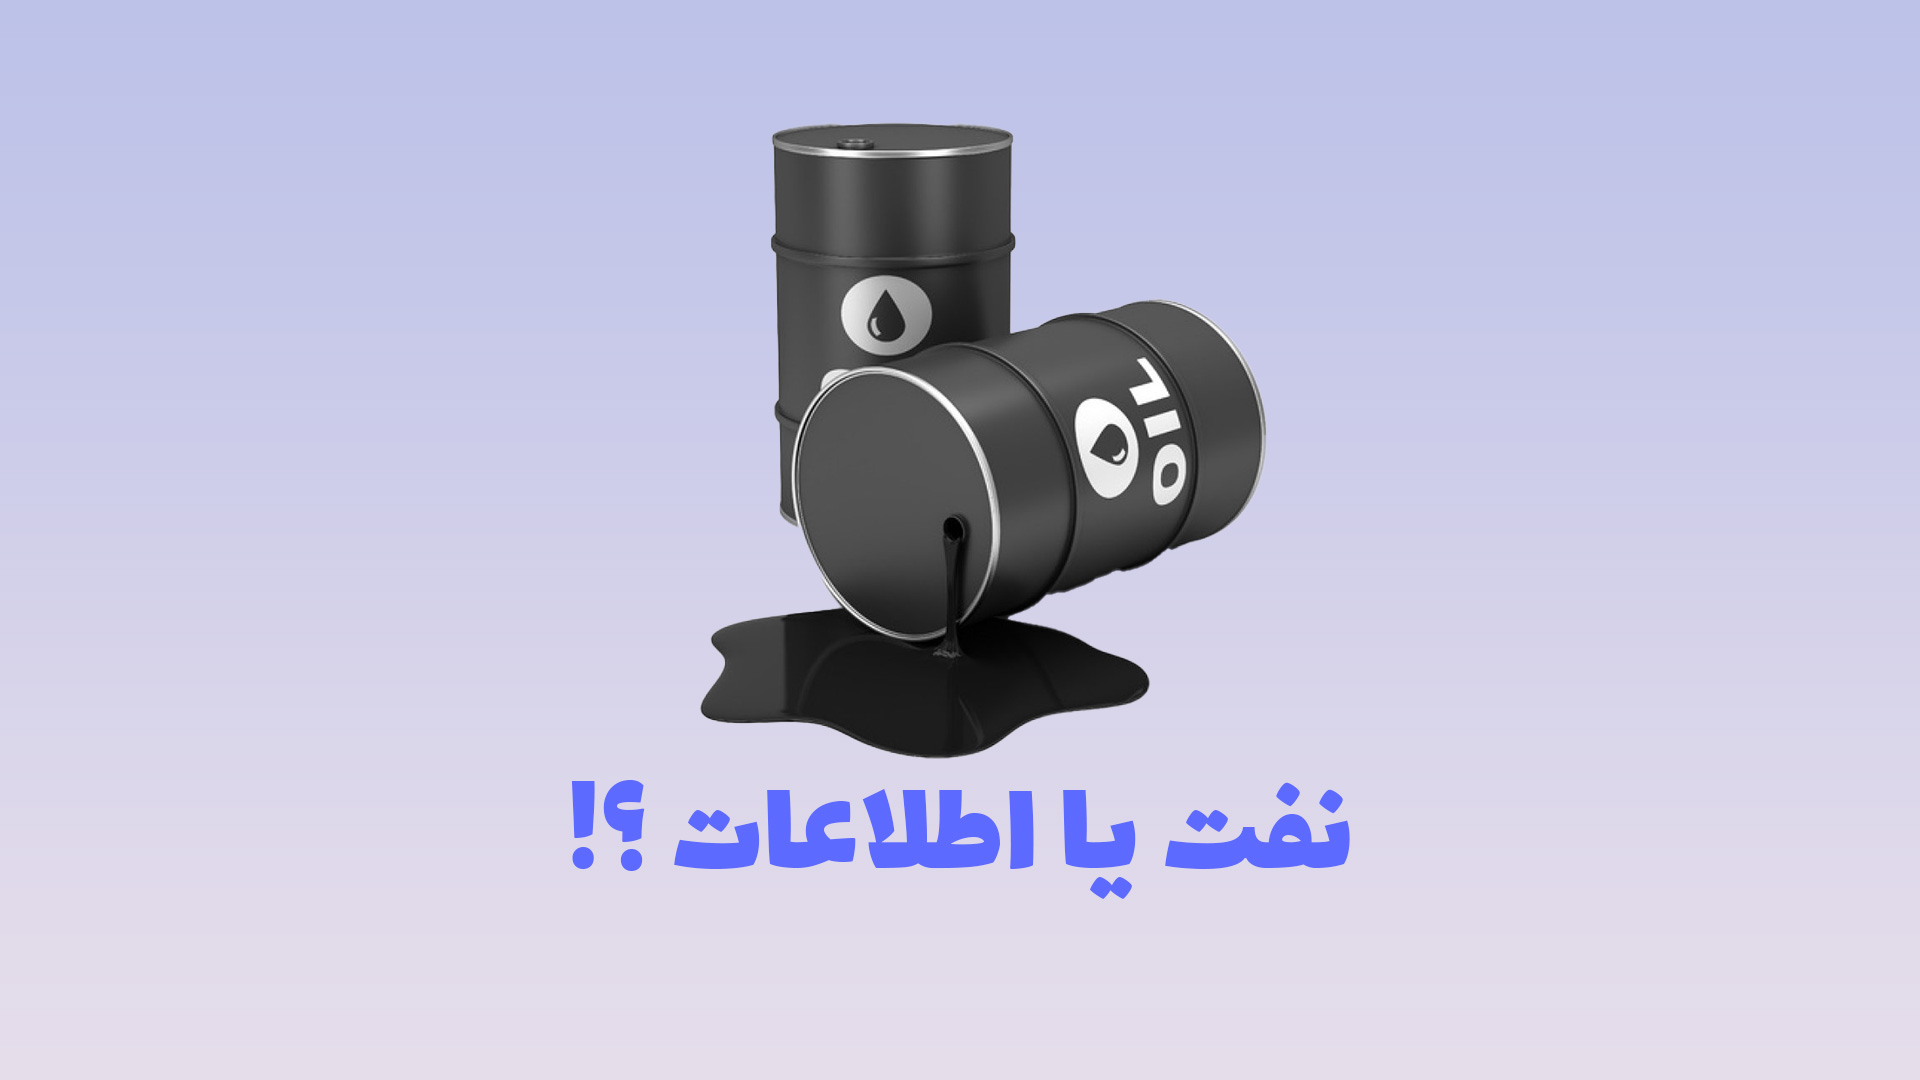 تصویر یک بشکه نفت به منظور نمایش ارزشمندی اطلاعات در کنار نفت